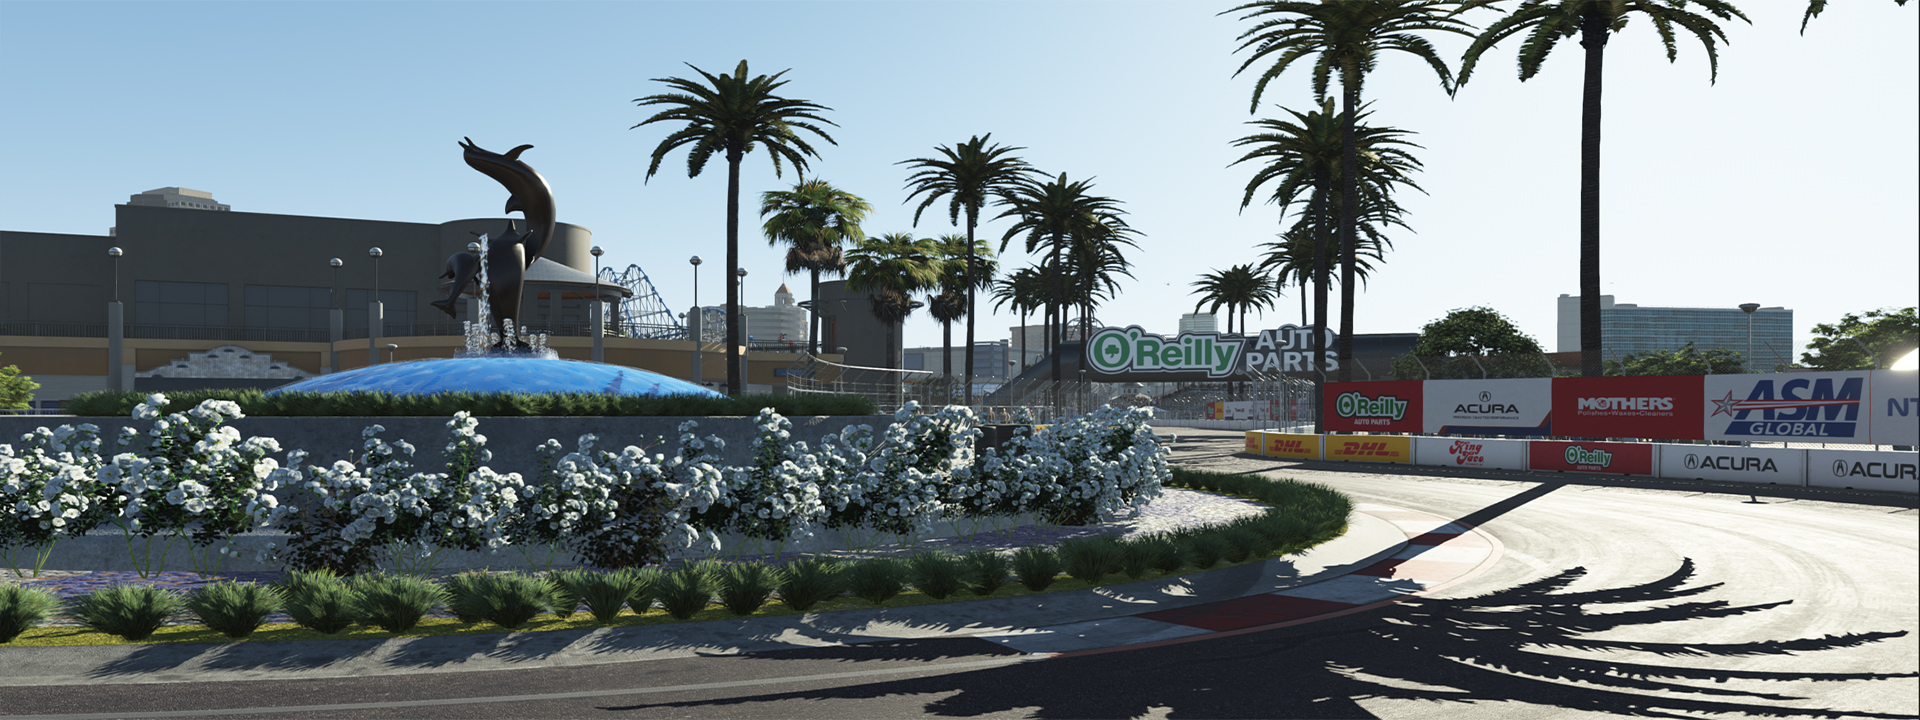 Long Beach Circuit Ankündigung für rFactor 2, Screenshot der Website